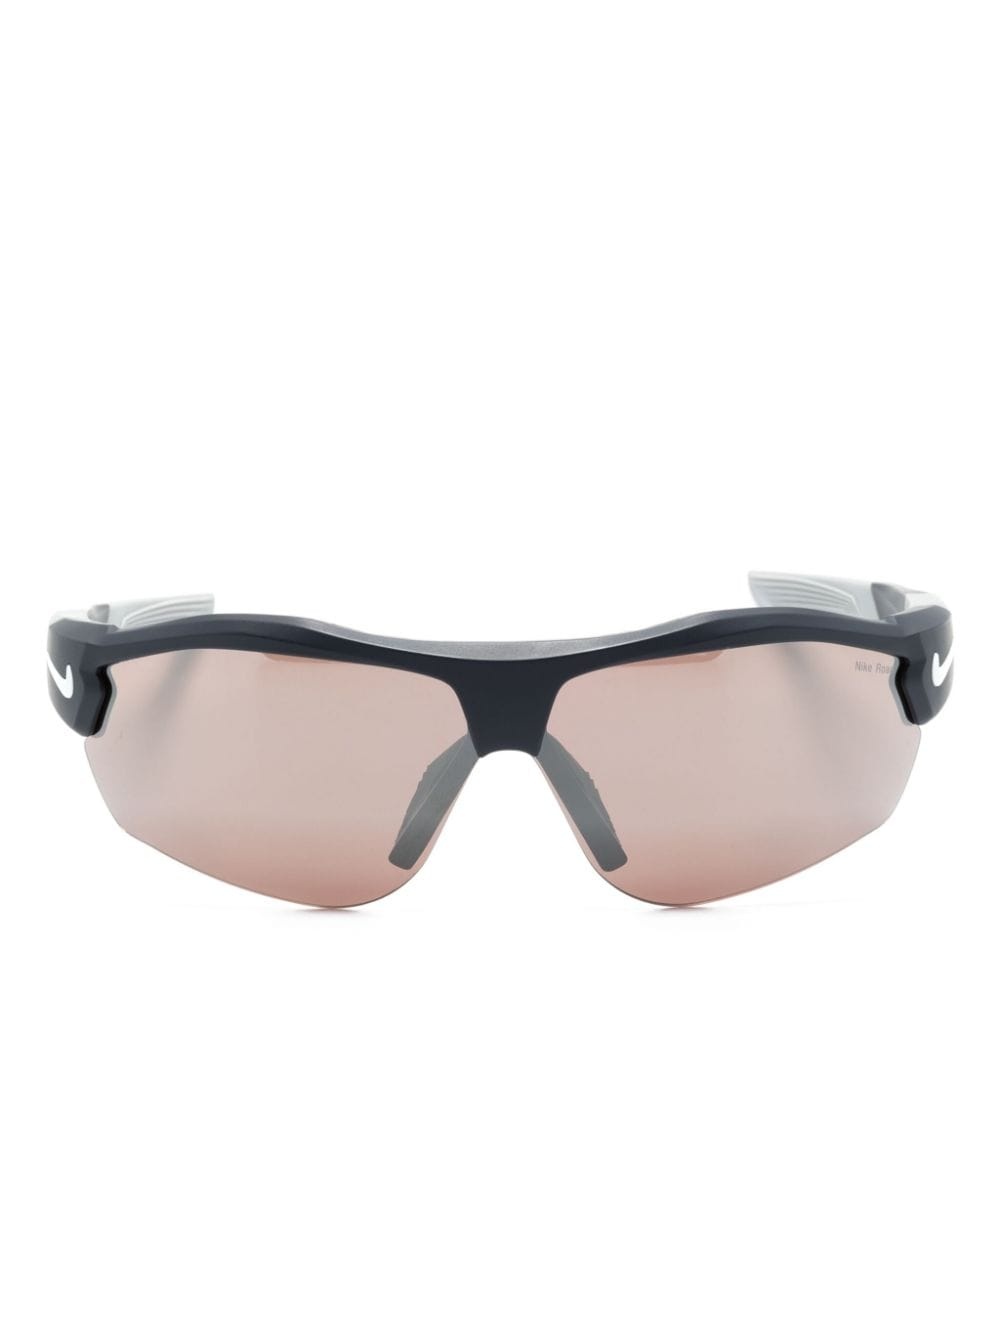 Show X3 pilot-frame sunglasses - 1